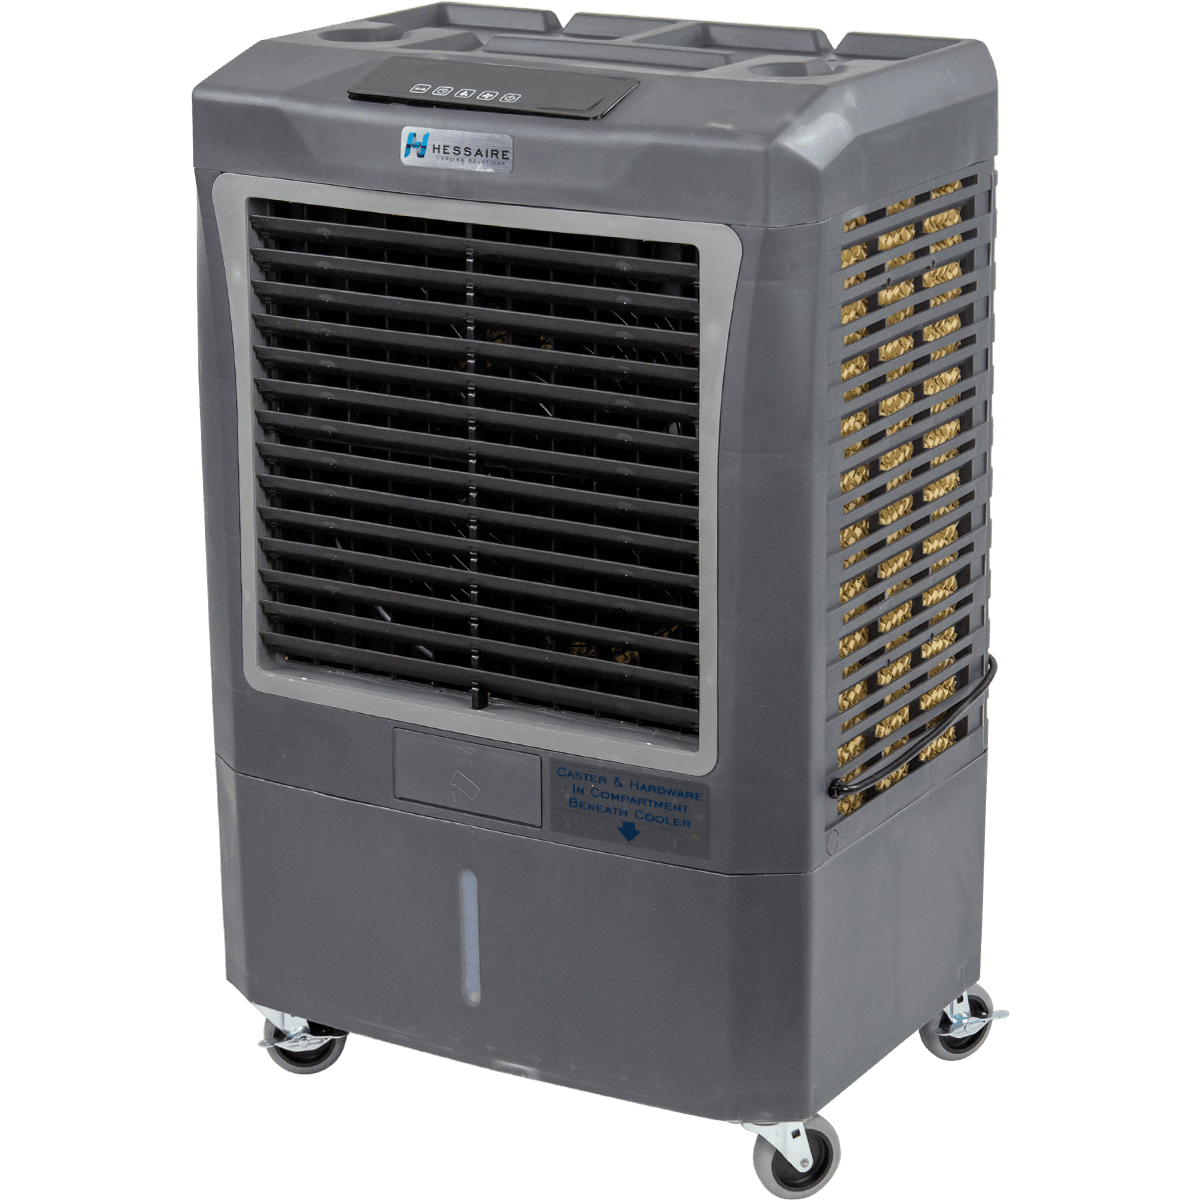 Hessaire MC37A 3,100 CFM Evaporative Cooler w/ Automatic Controls